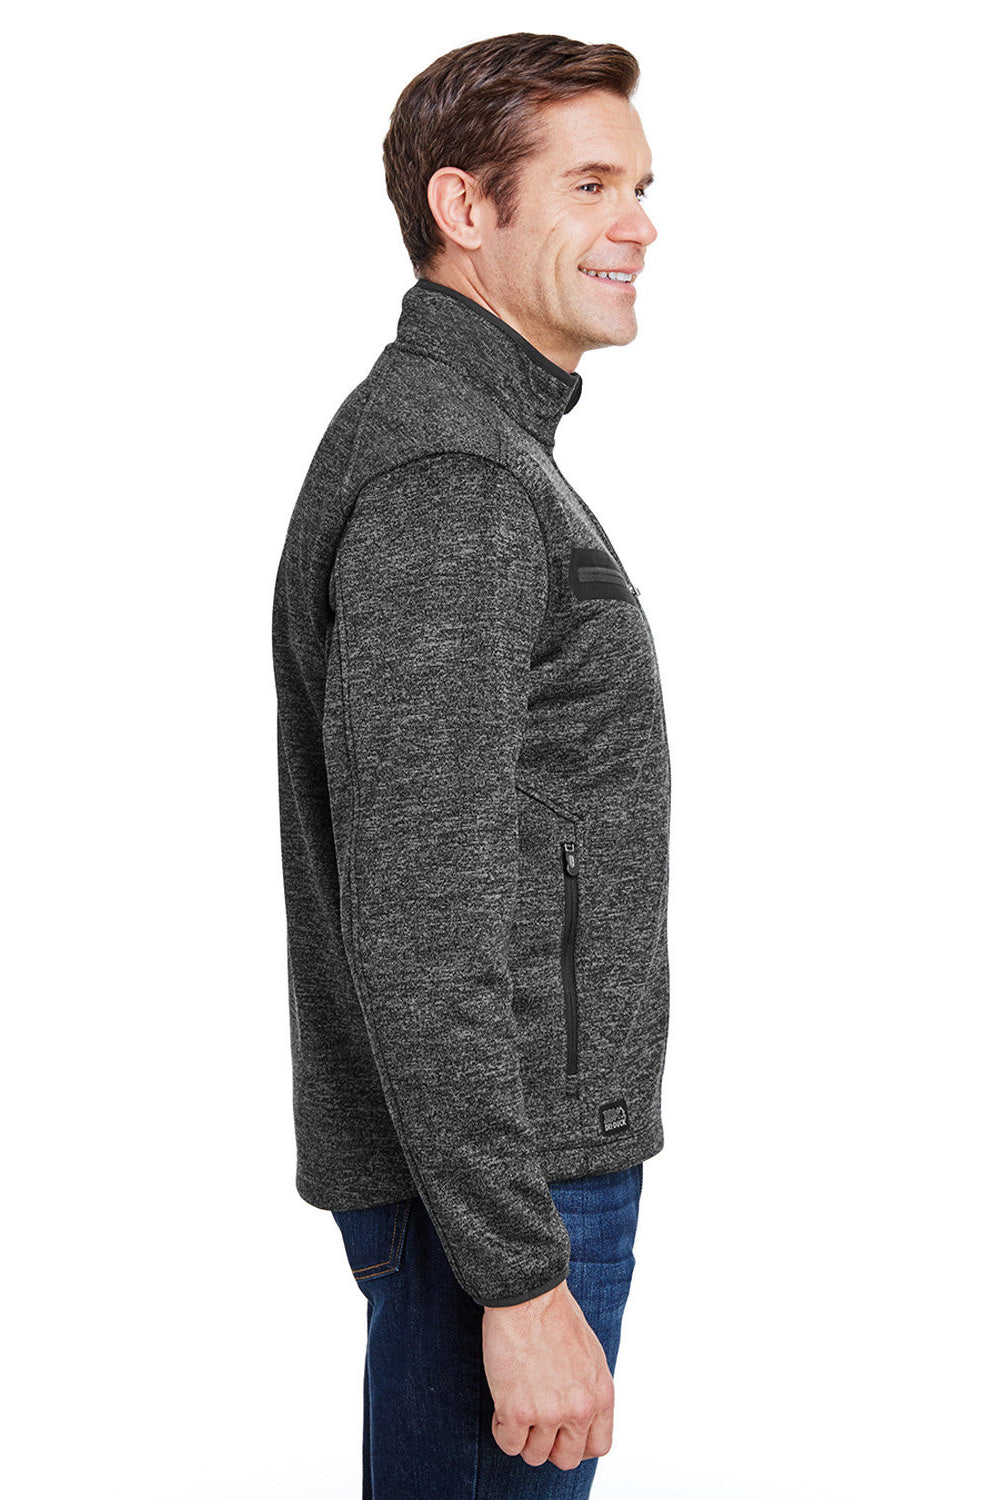 Dri Duck 5316 Mens Atlas Sweater Fleece Full Zip Jacket Charcoal Grey Model Side